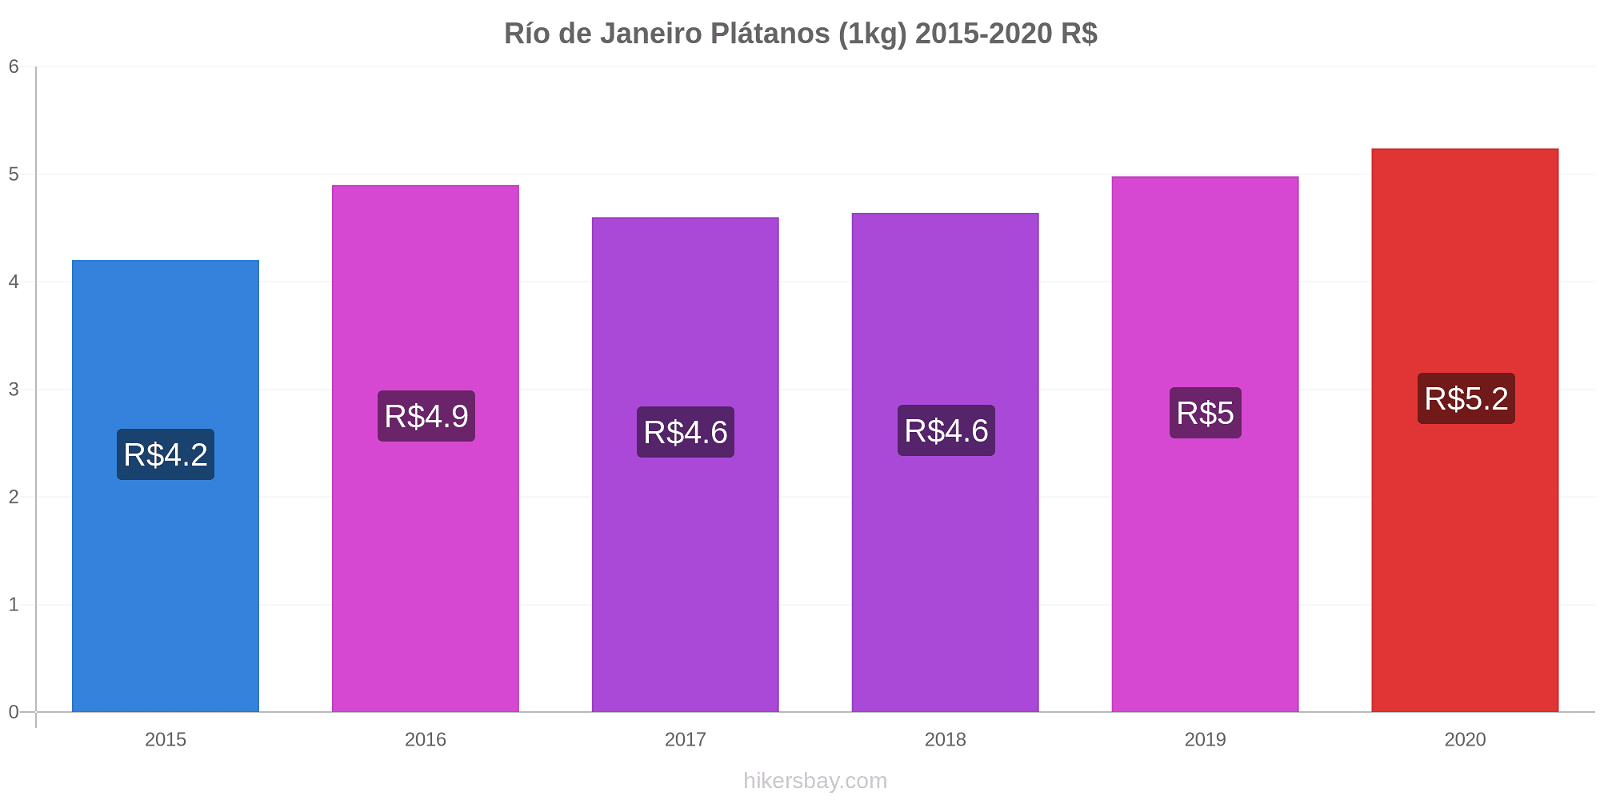 Río de Janeiro cambios de precios Plátano (1kg) hikersbay.com